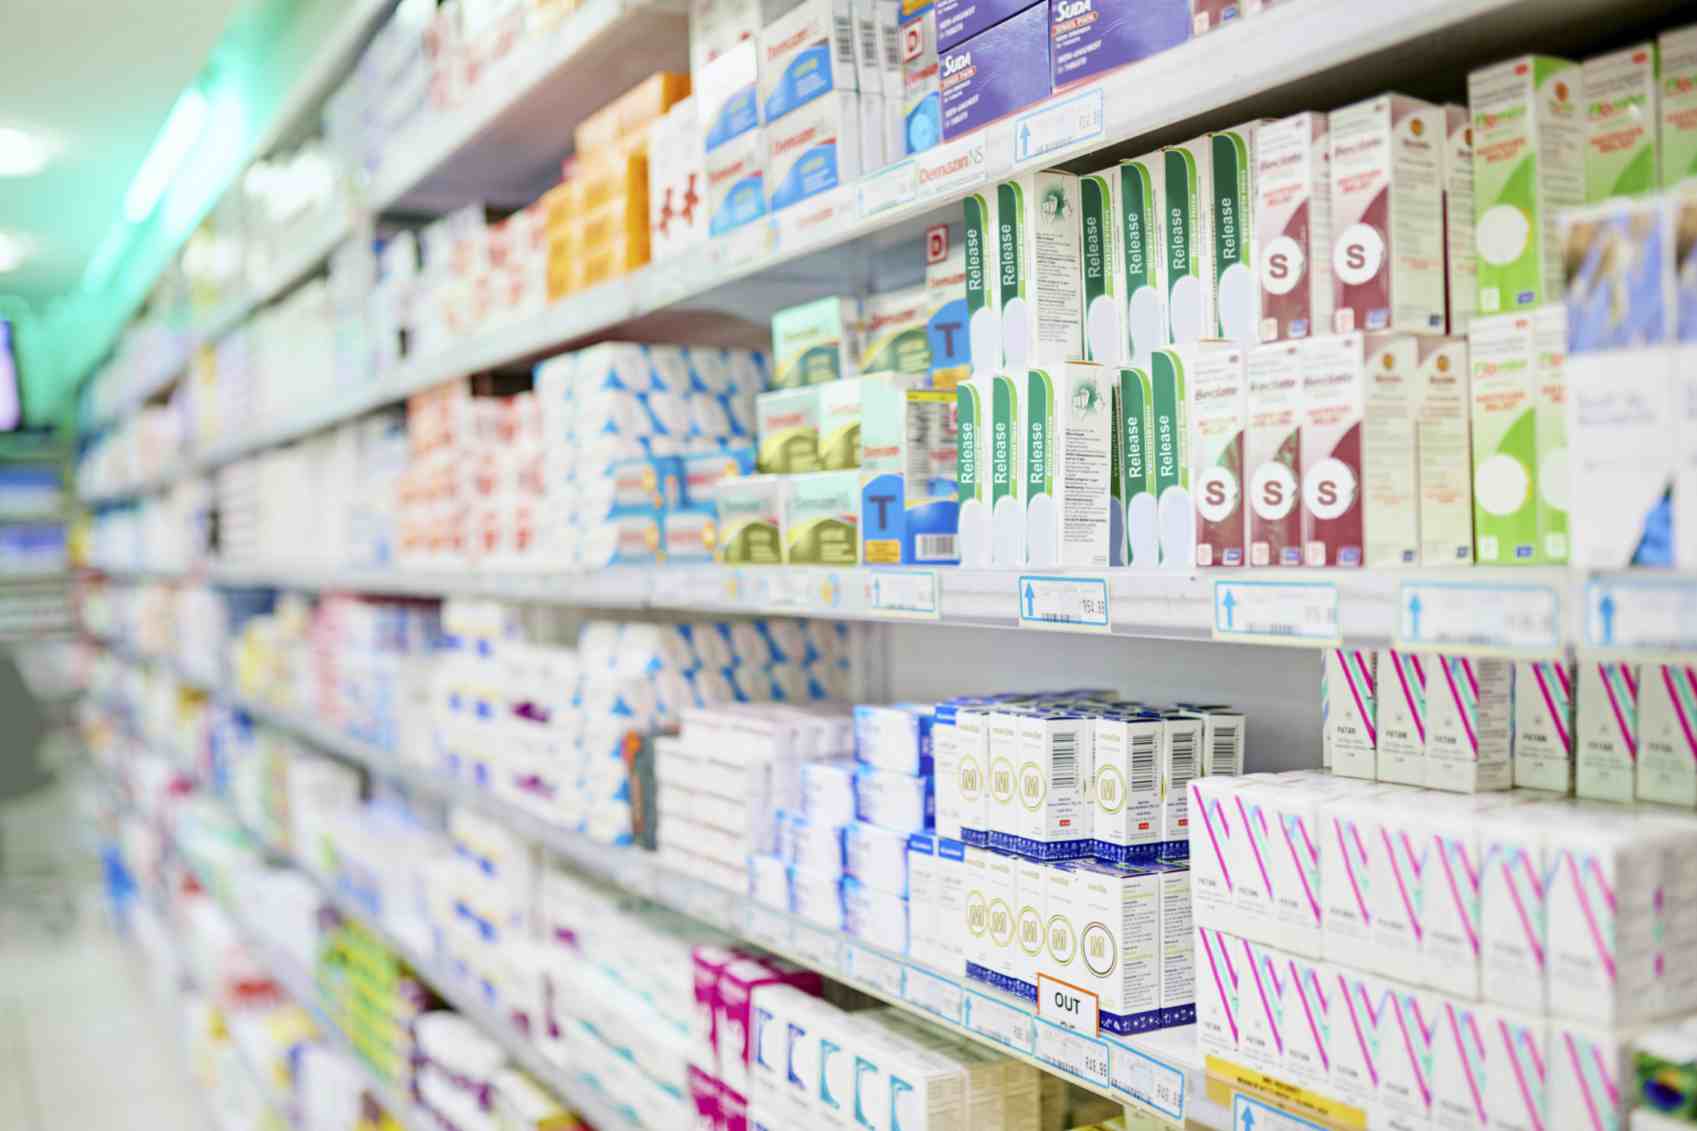 Federico Fischer: “Esto nos afecta y puede hacer que muchas farmacias cierren” - Delta 90.3